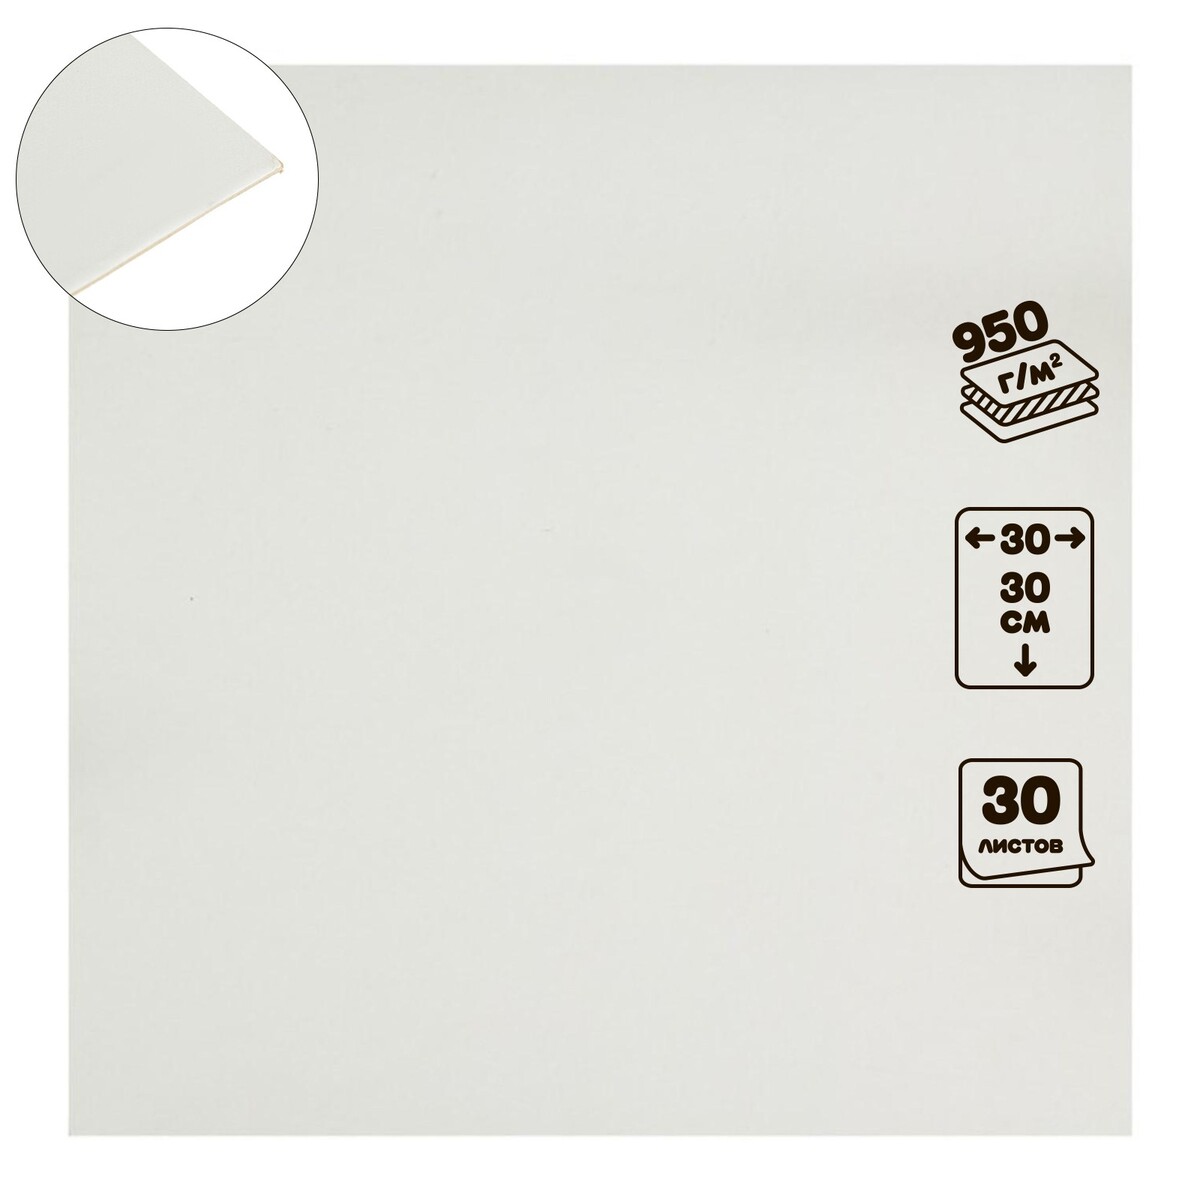 Картон переплетный 1.5 мм, 30 х 30 см, 30 листов, 950 г/м², белый белый картон art idea двухсторонний 8 листов а4